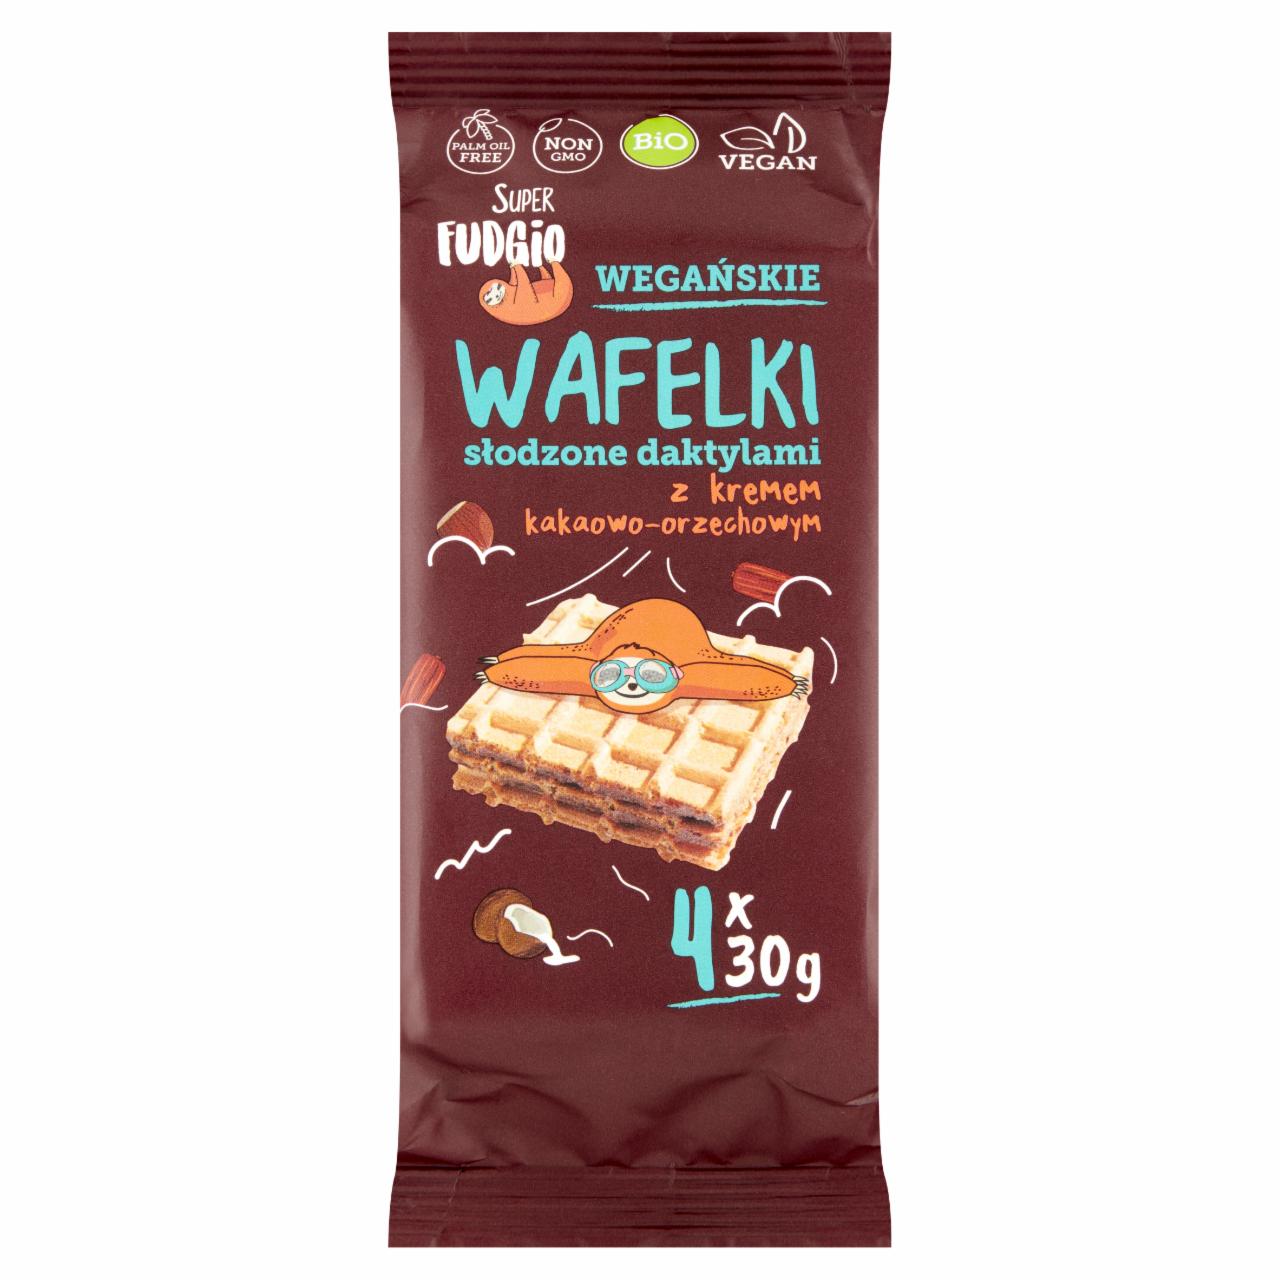 Zdjęcia - Super Fudgio Wegańskie wafelki słodzone daktylami z kremem kakaowo-orzechowym 120 g (4 x 30 g)